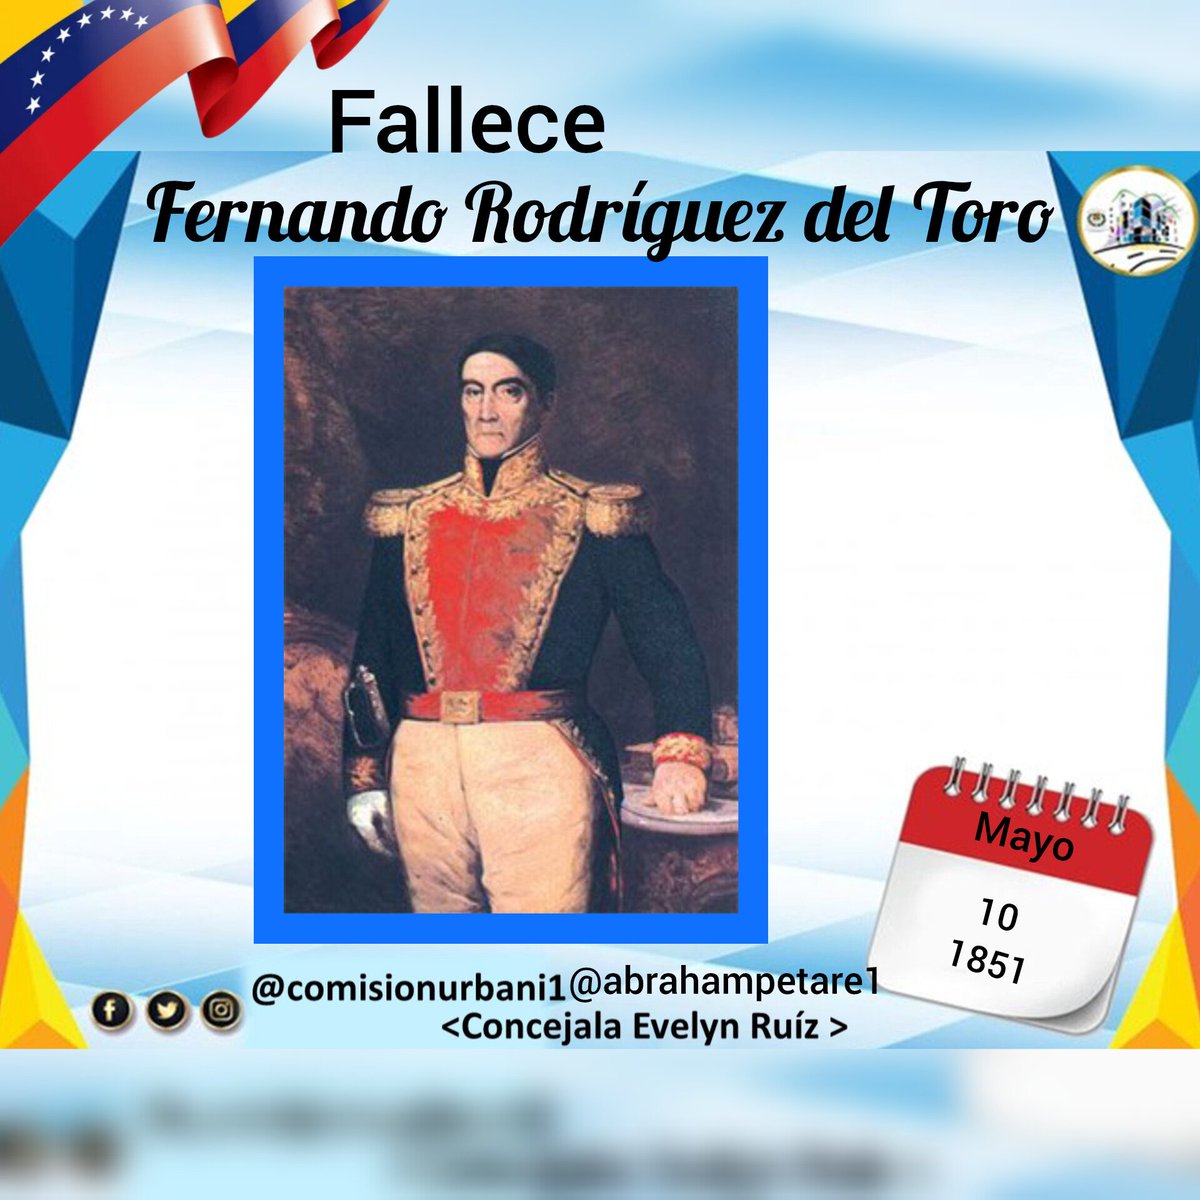 #10May 1851, Fallece en #Caracas Francisco Rodríguez del Toro. Militar venezolano. Destacado General de división del ejército libertador de Venezuela. Miembro del Segundo Triunvirato que rigió los destinos de la Primera República. #ComisiónDeUrbanismo #VenezuelaFestivalDeAmor